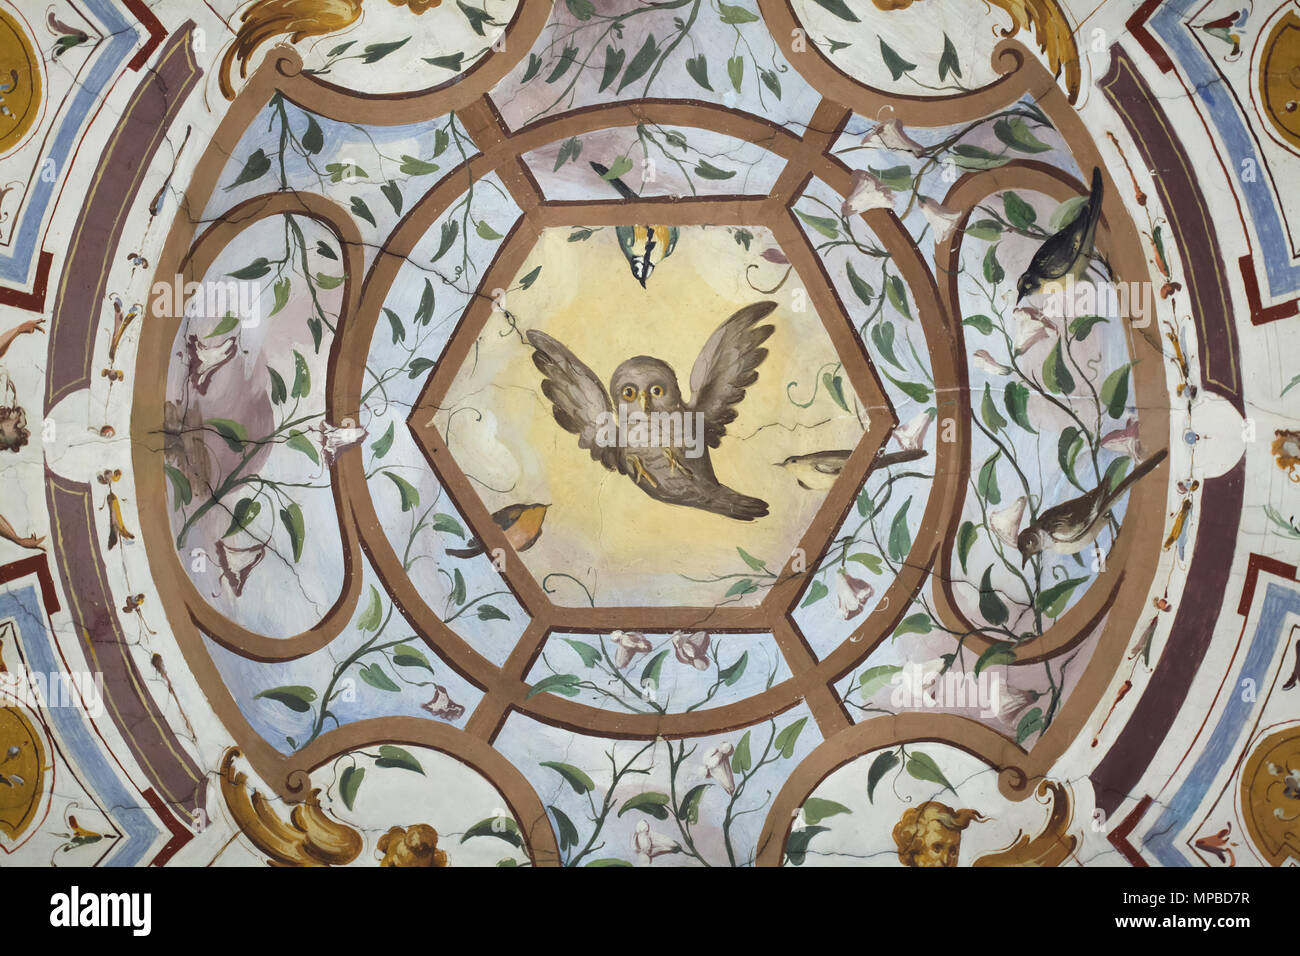 Eule im Deckenfresko der Vasari Korridor in den Uffizien (Galleria degli Uffizi) in Florenz, Toskana, Italien dargestellt. Stockfoto